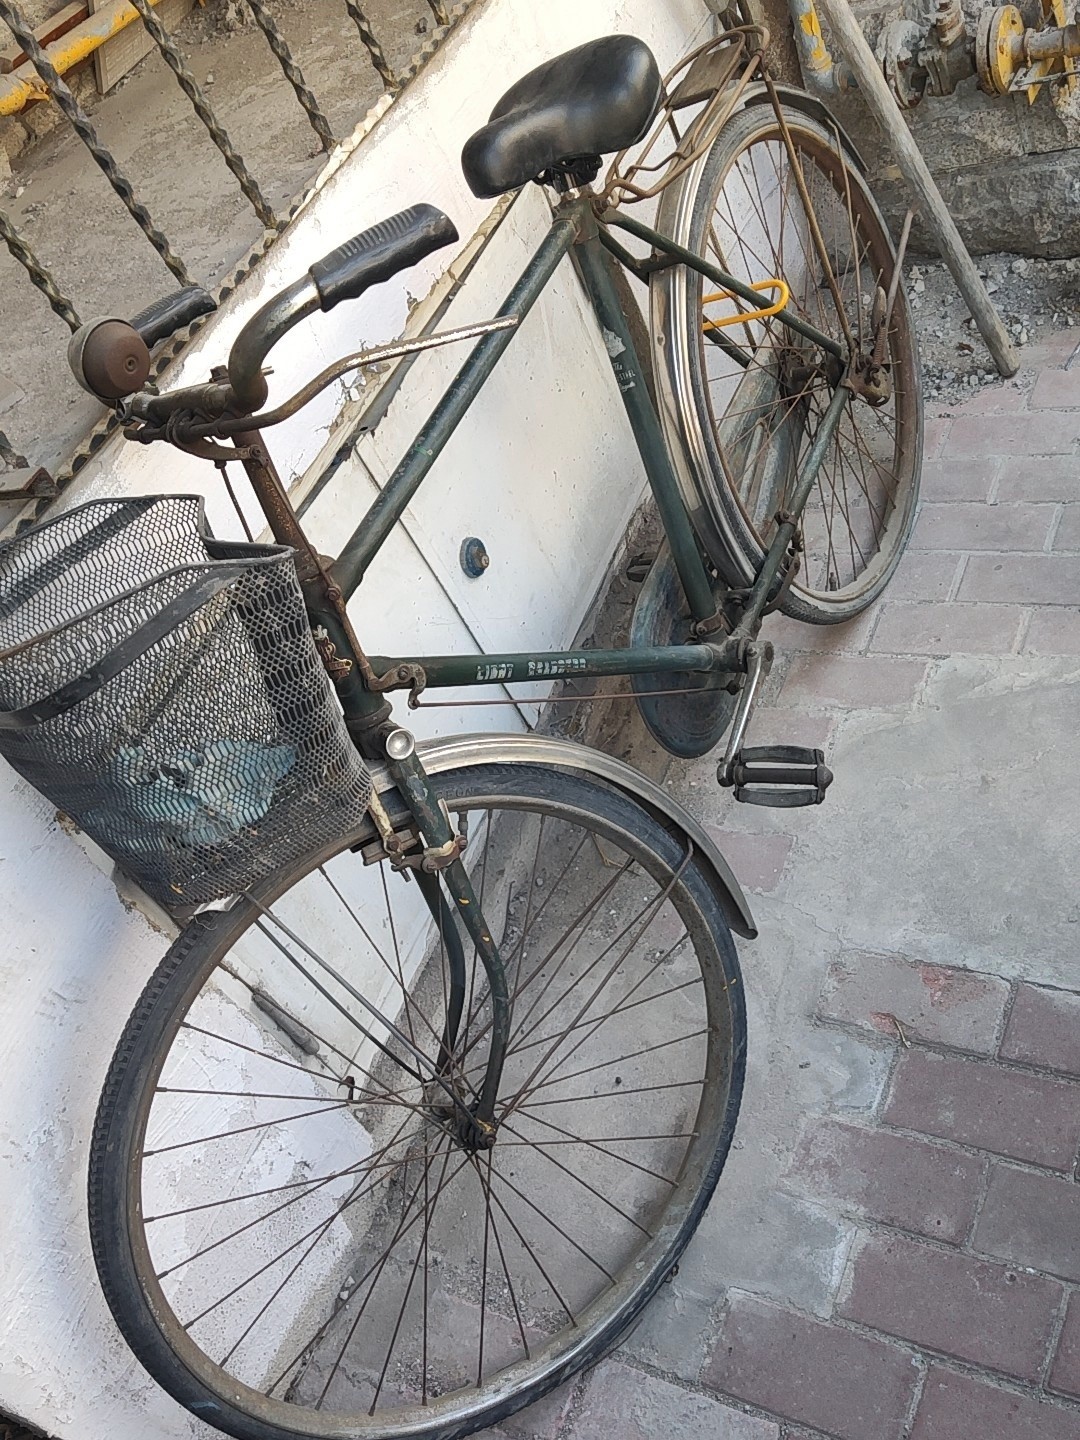 老飞鸽自行车 飞鸽26自行车80年代产品.天津津南领世郡附近议价品